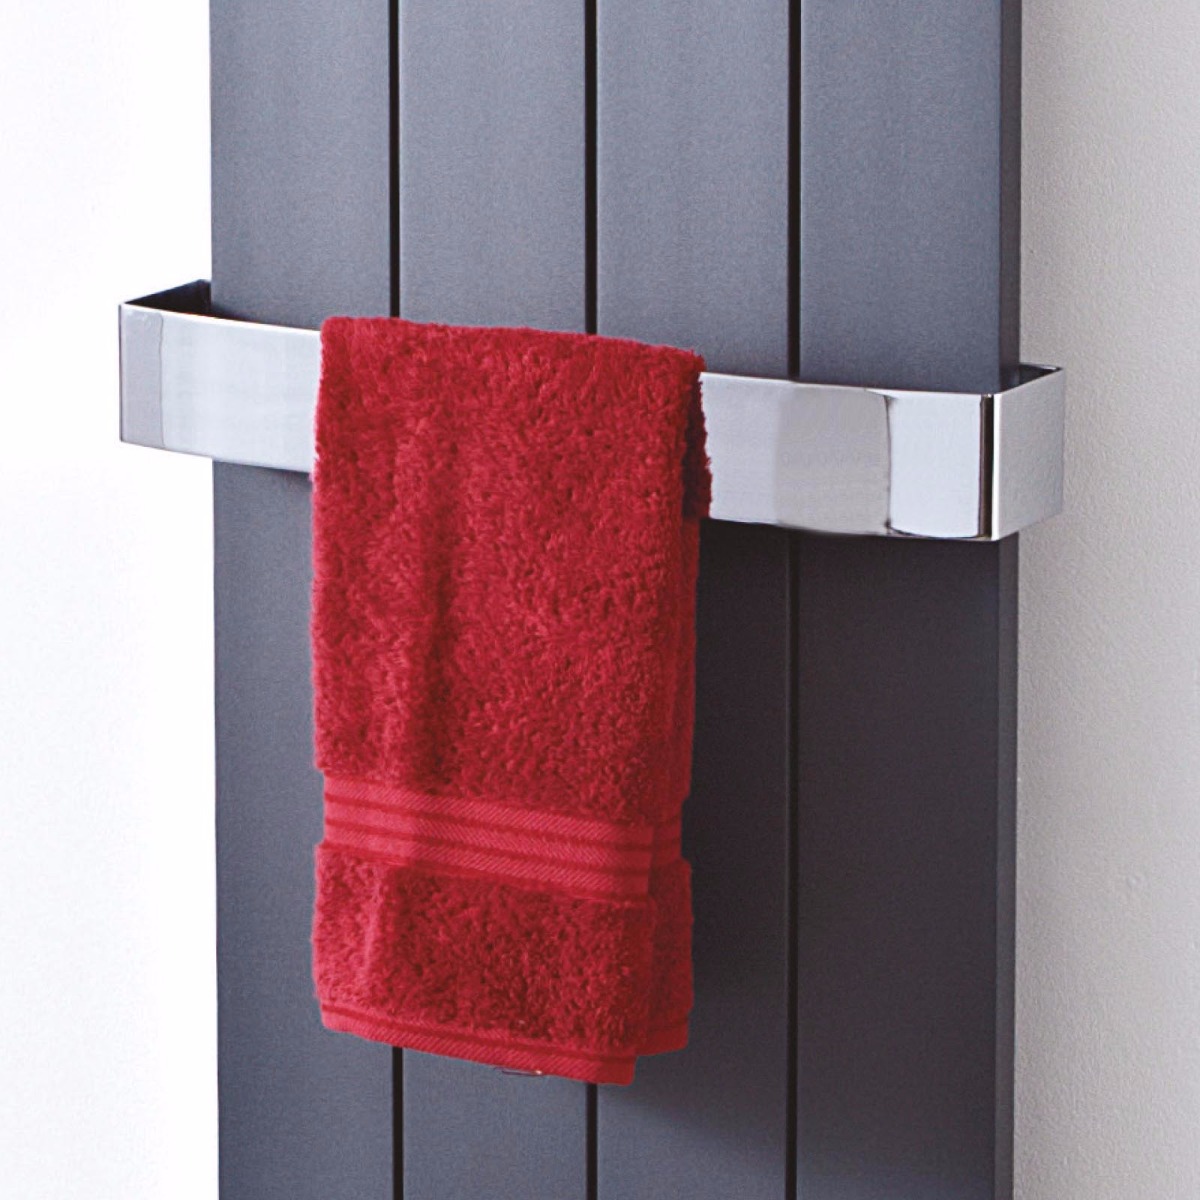 Chrome Towel Rail City Tiles & Bathrooms